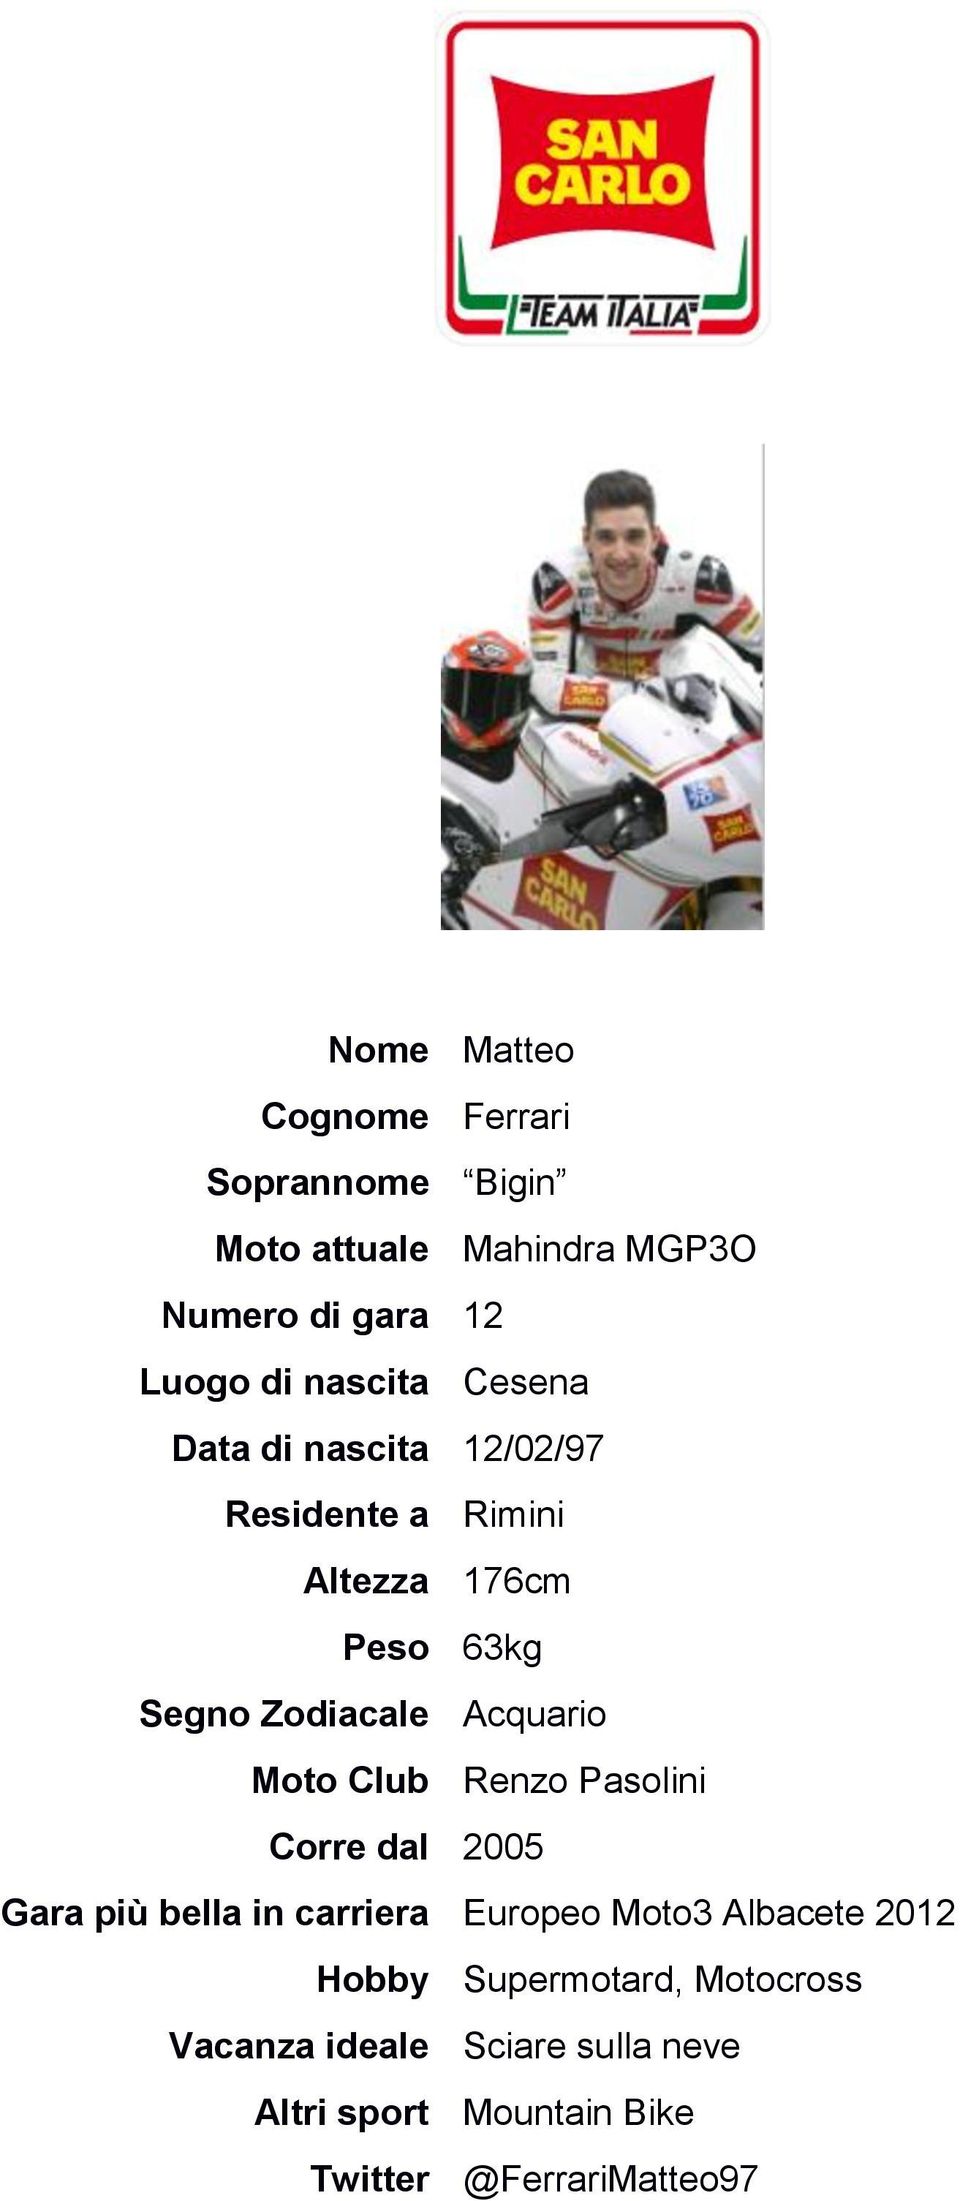 Acquario Moto Club Renzo Pasolini Corre dal 2005 Gara più bella in carriera Europeo Moto3 Albacete 2012